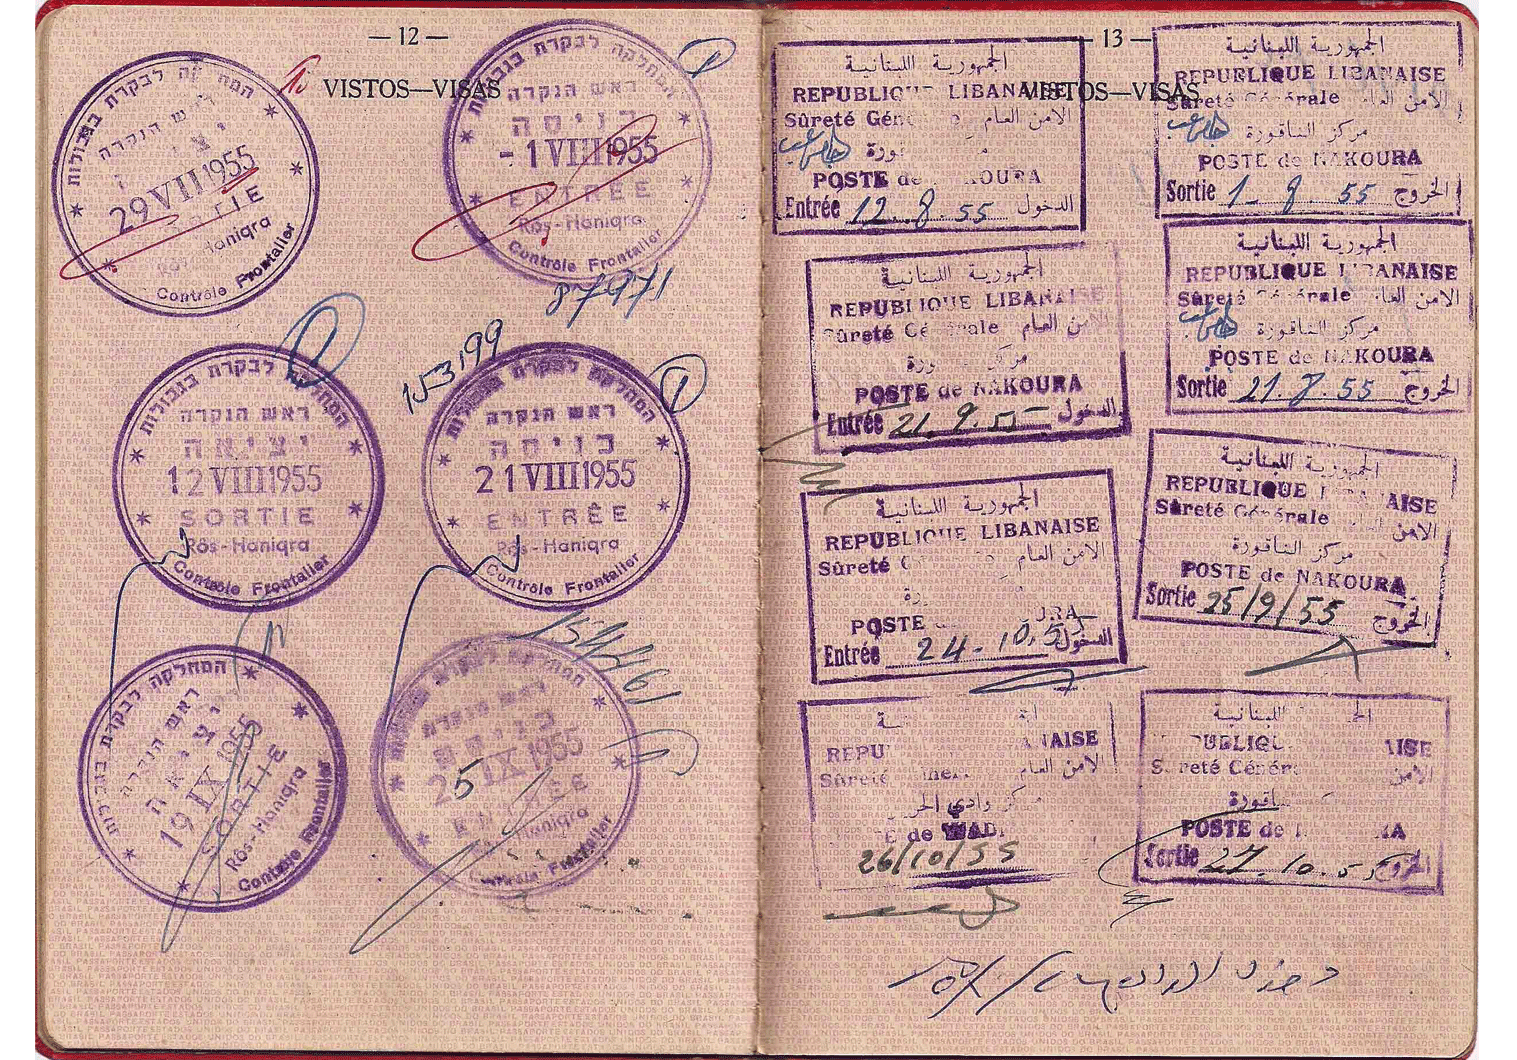 old Israeli passport